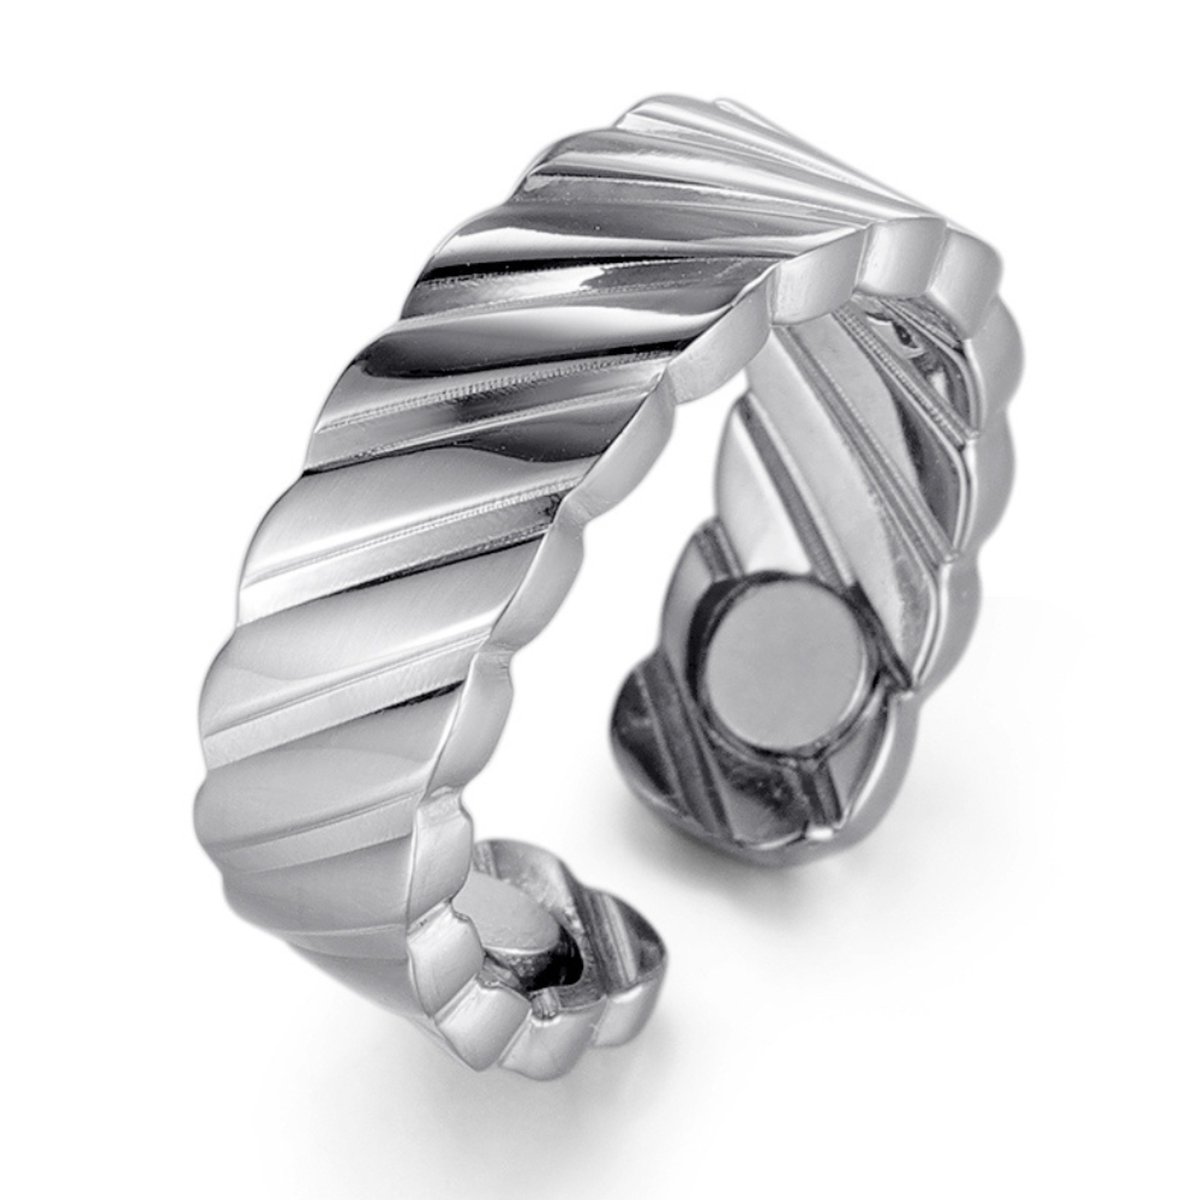 MAGNETOX - Helende Ring 'Fenne' - Magneet Ring - Gezondheidsring - Magnetische Ring - Roestvrijstaal (RVS) - Zilver - Dames - 50mm